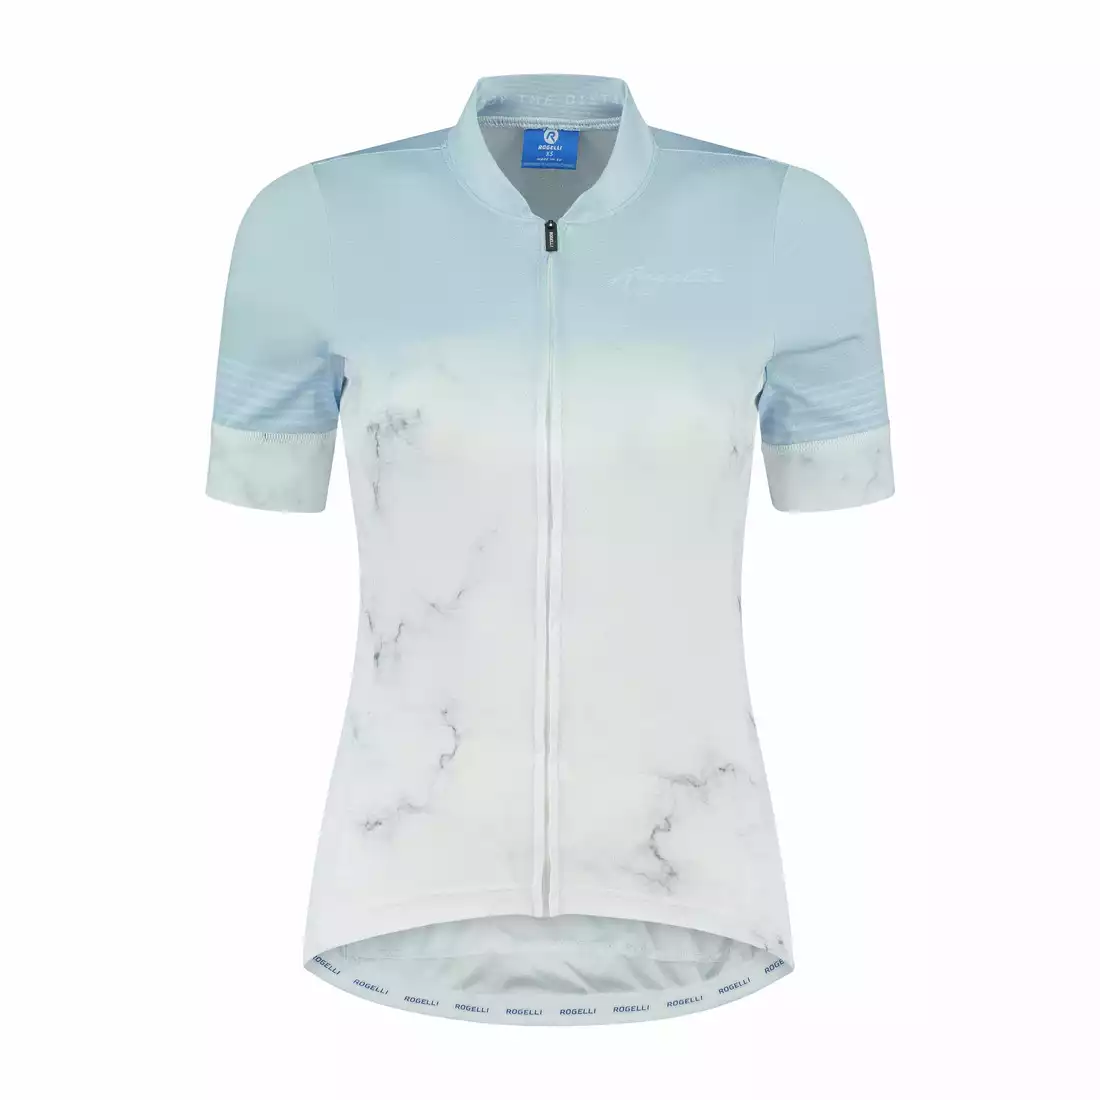 ROGELLI MARBLE Koszulka rowerowa damska, biało-niebieska